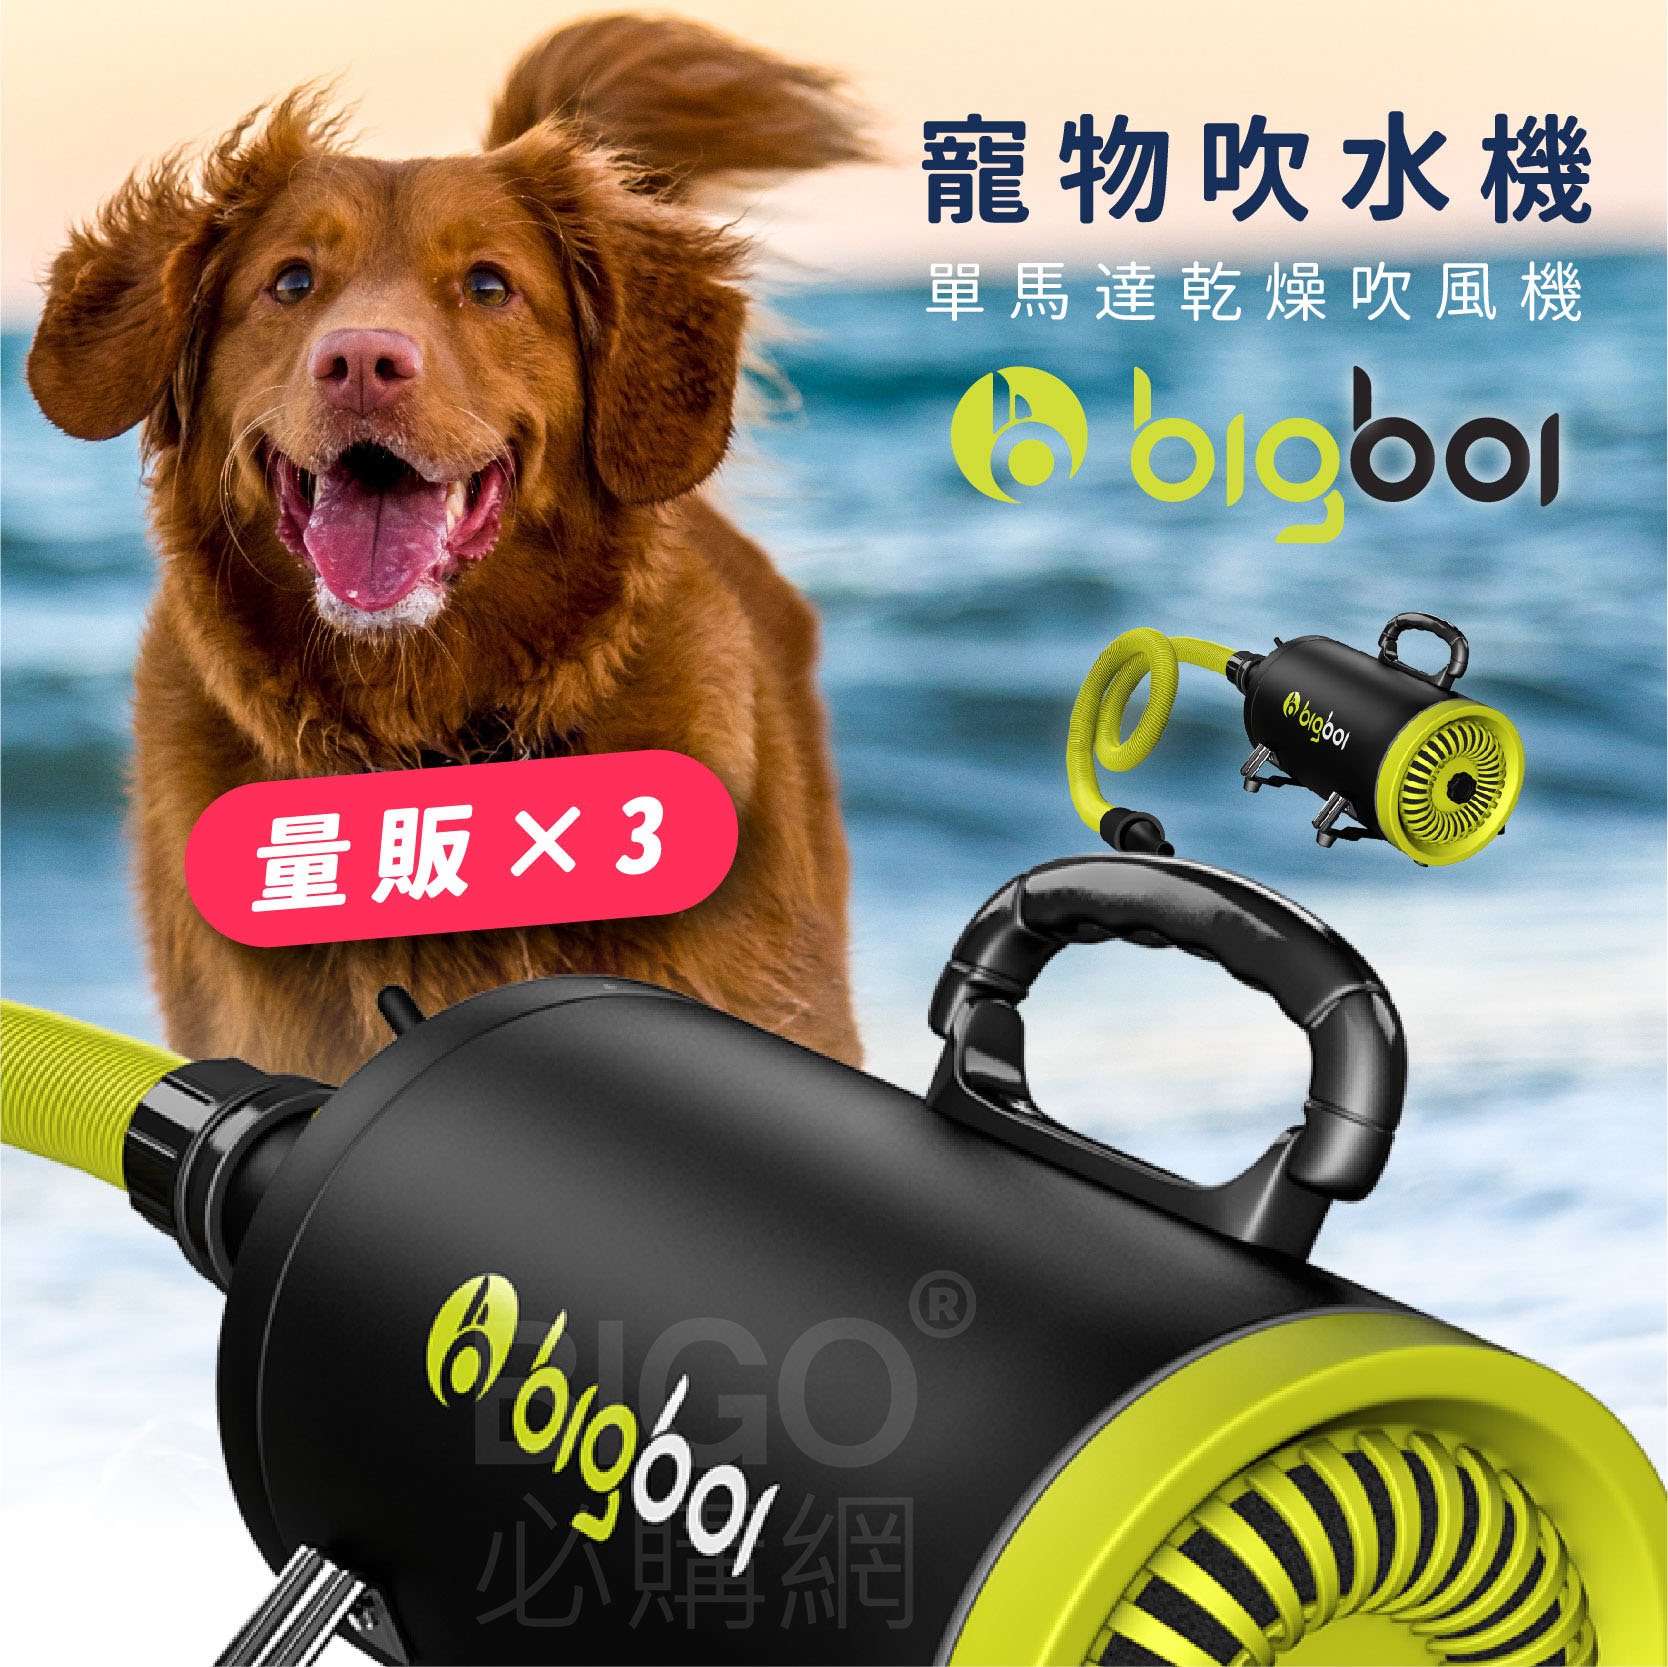 人氣熱賣NO.1【bigboi】(量販3台) MINI 寵物單馬達吹風機 吹水機 乾燥 烘乾 洗澡 清潔 美容 貓狗必備